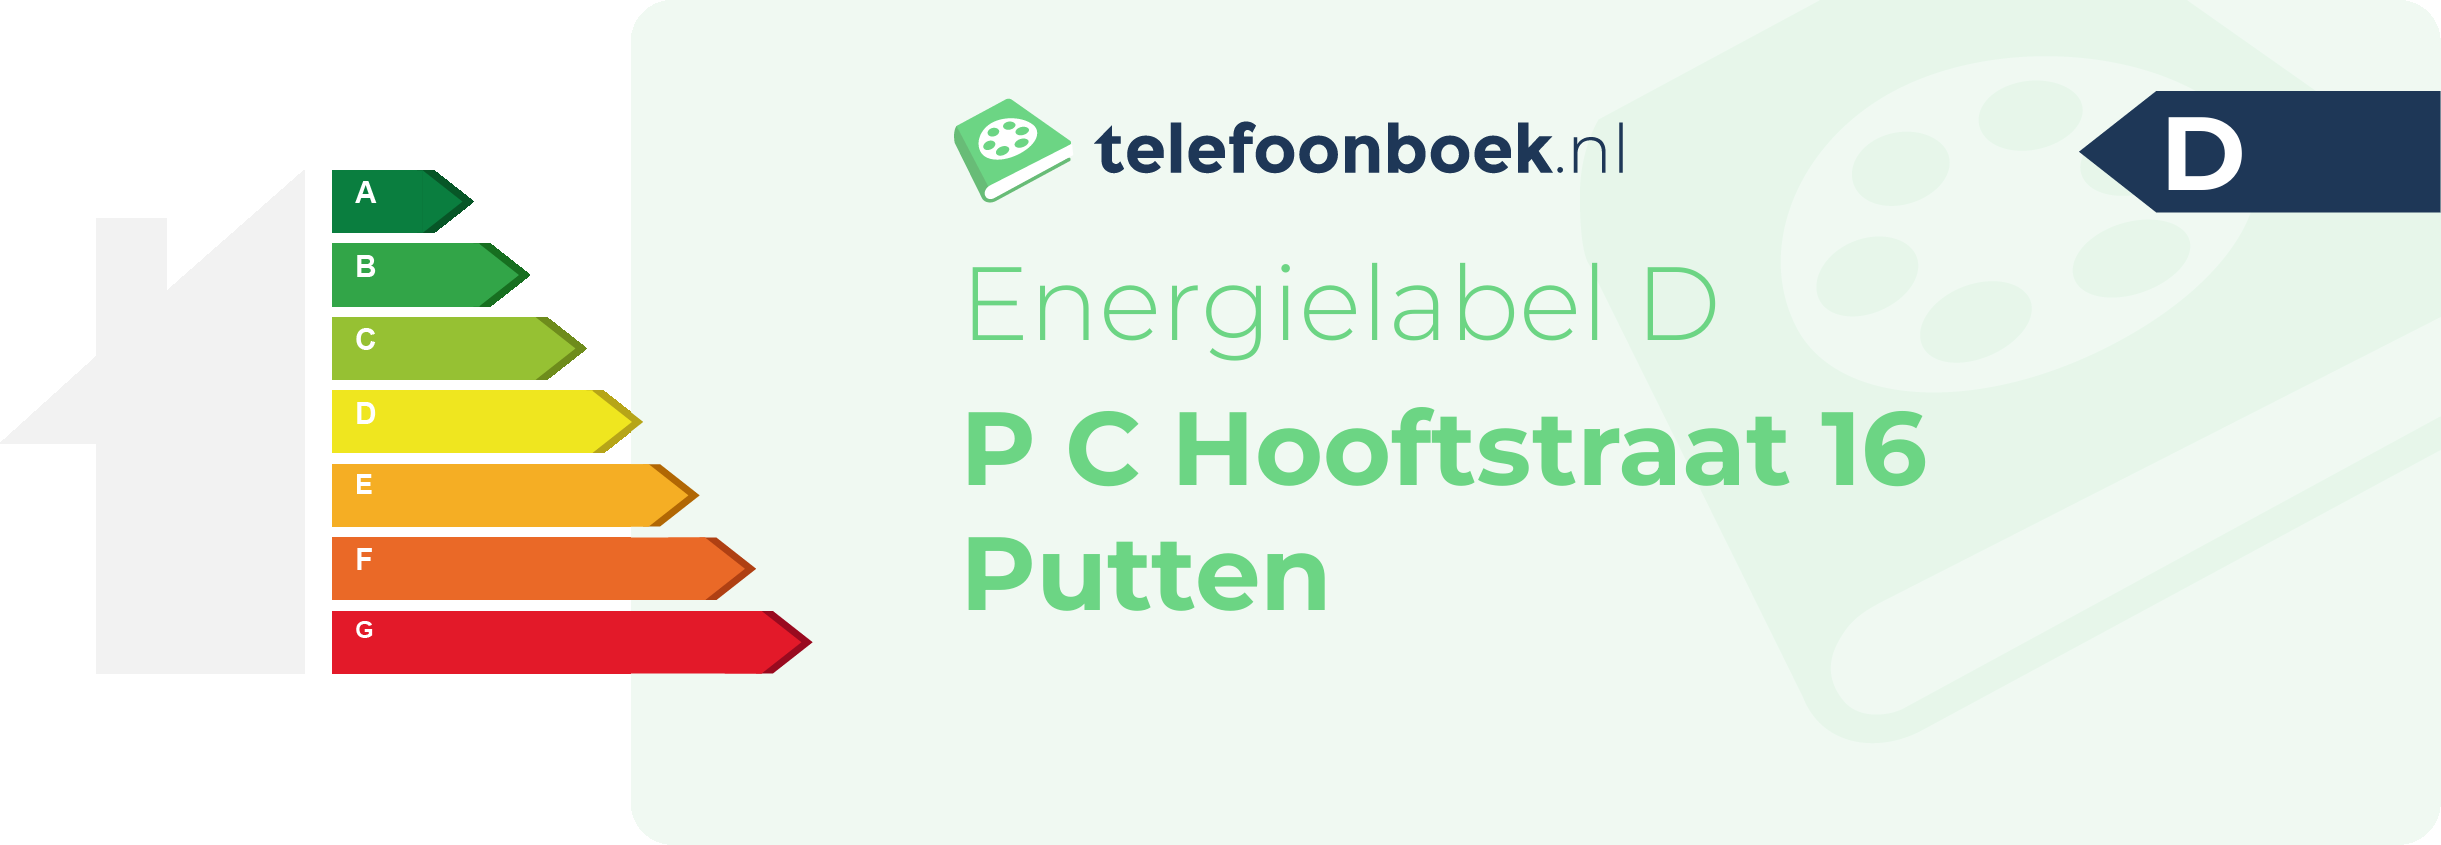 Energielabel P C Hooftstraat 16 Putten